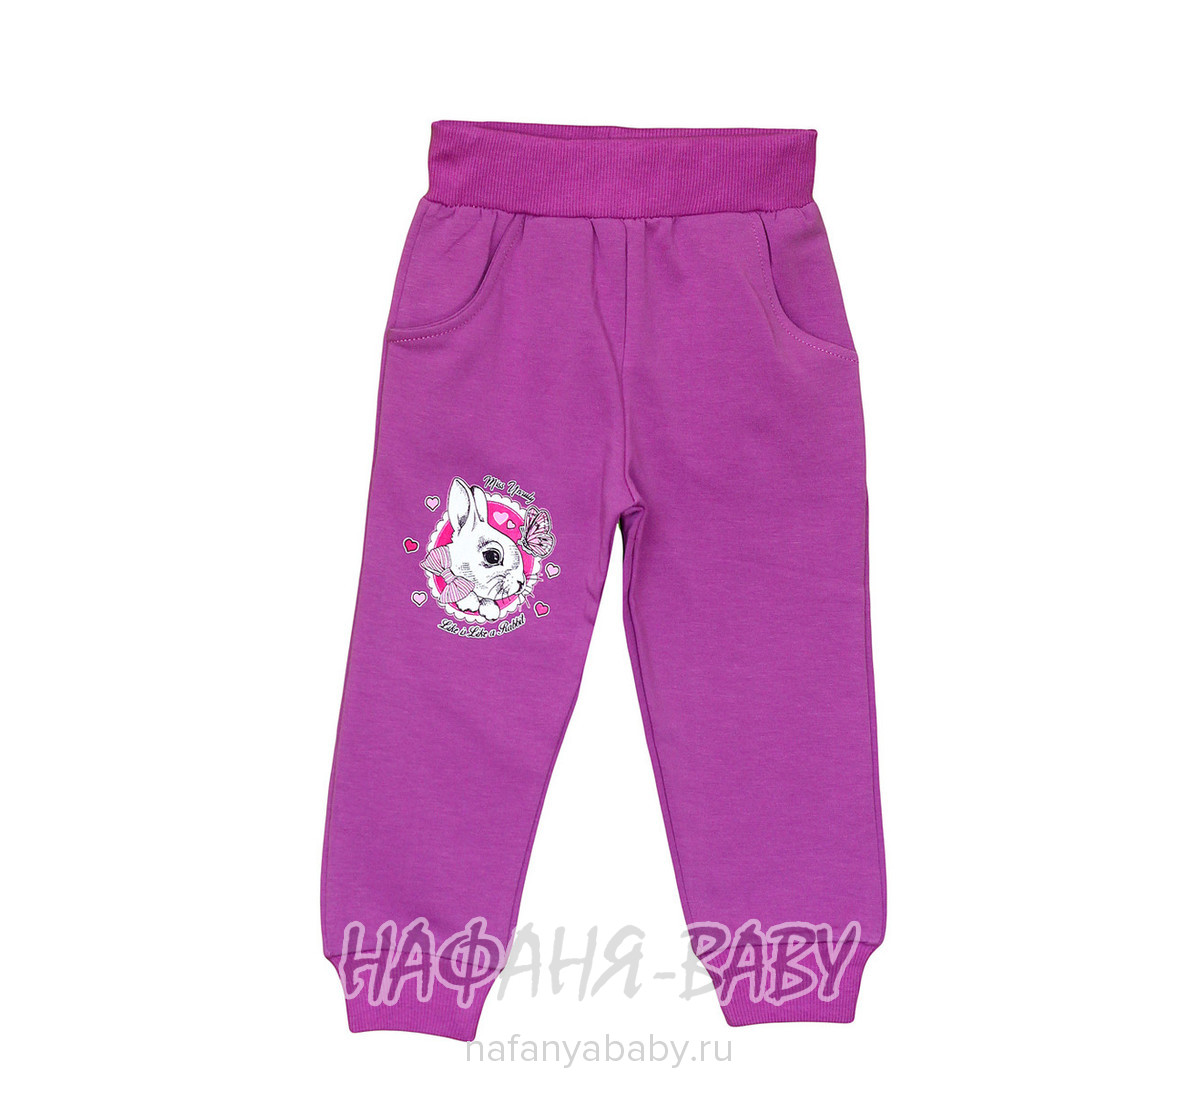 Детские теплые брюки для девочки UNRULY арт: 6767, 1-4 года, оптом Турция